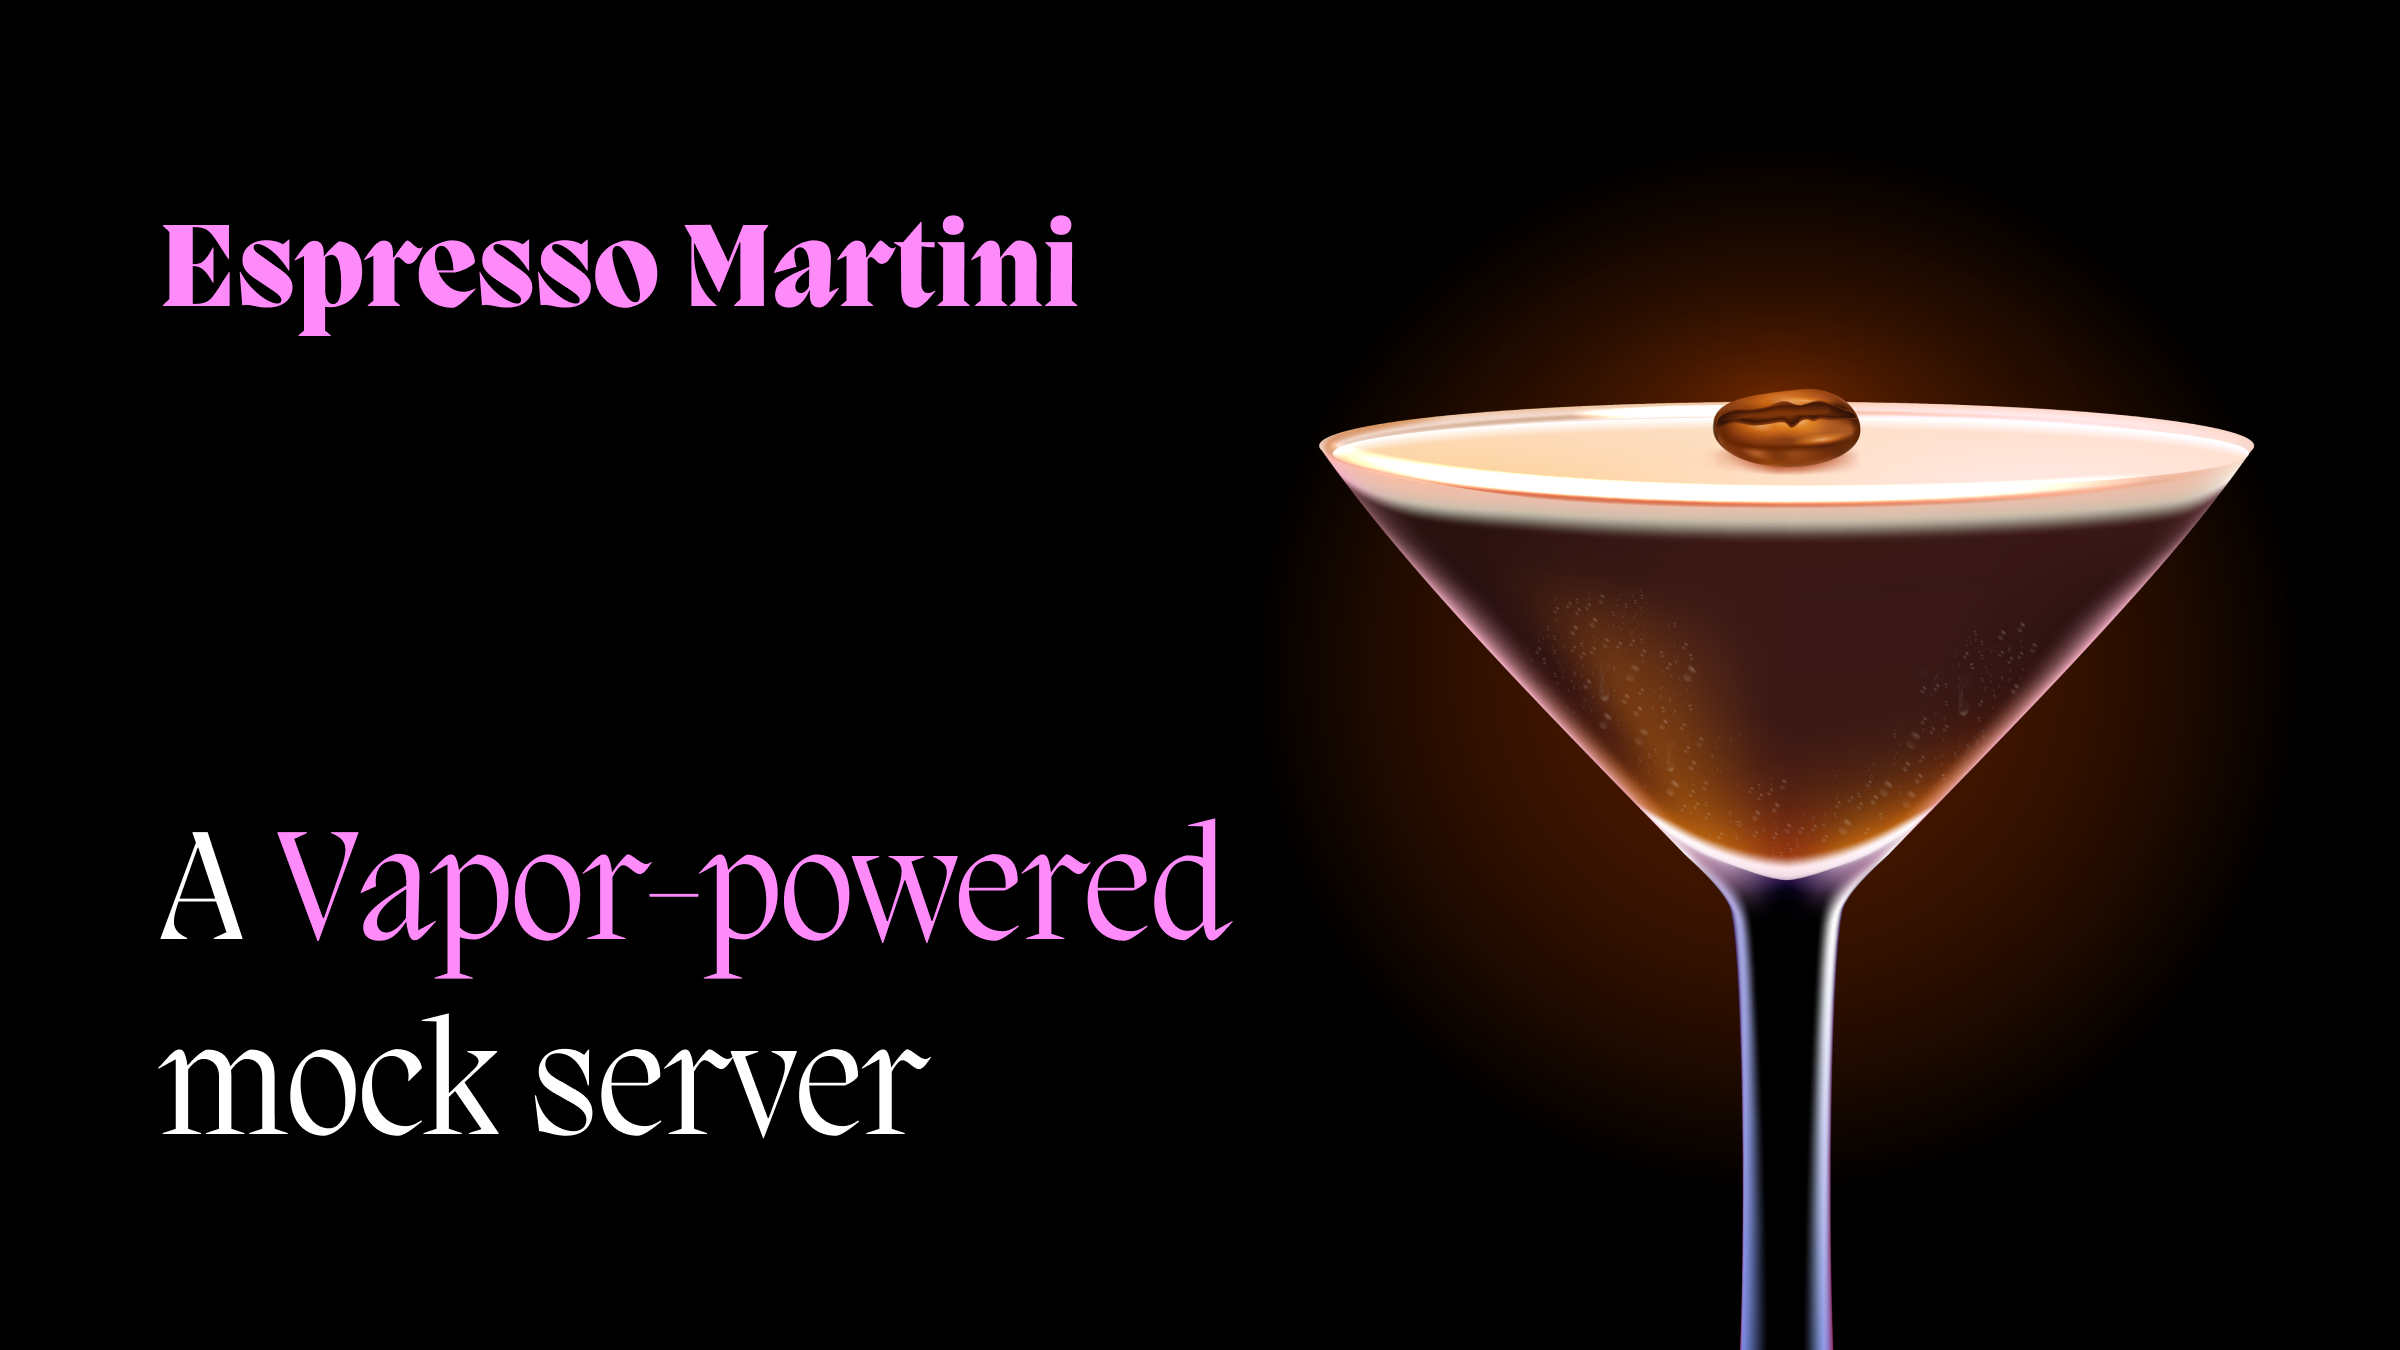 Espresso Martini logo